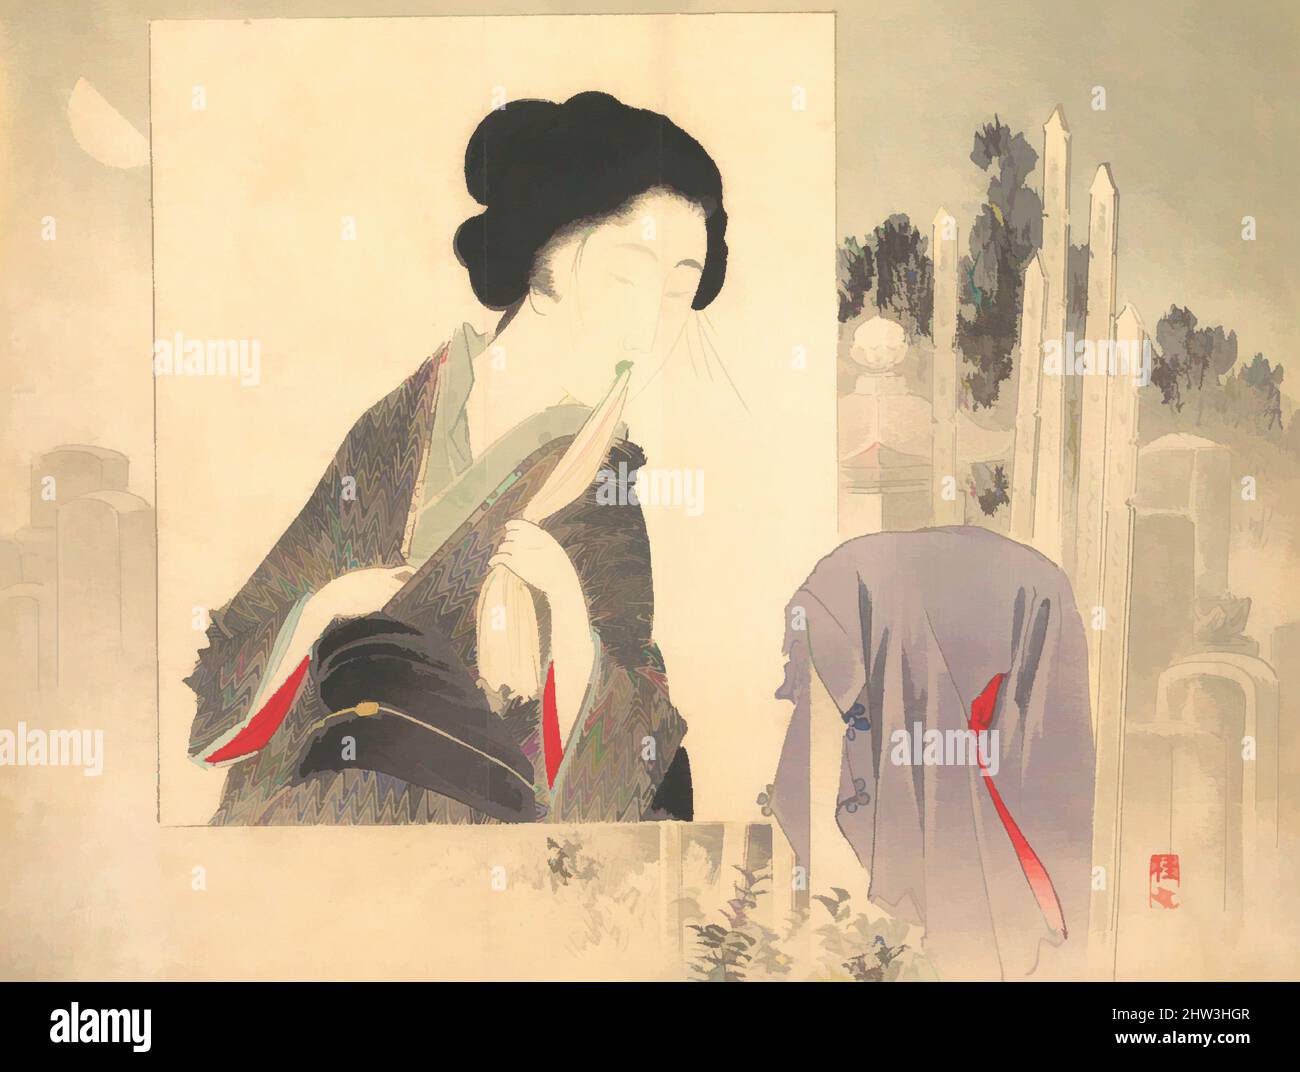 Arte inspirado por Widow y Widower de kuchie (frontispiece) de una novela, Meiji período (1868-1912), ca. 1906, Japón, impresión en bloque de madera policromada; tinta y color en papel, 8 1/2 x 11 1/4 pulg. (21,6 x 28,6 cm), Impresiones, Takeuchi Keishū (Japonés, 1861–1943, Obras clásicas modernizadas por Artotop con un toque de modernidad. Formas, color y valor, atractivo impacto visual en el arte Emociones a través de la libertad de las obras de arte de una manera contemporánea. Un mensaje atemporal que busca una nueva dirección totalmente creativa. Artistas que se están volviendo al medio digital y creando el Artotop NFT Foto de stock